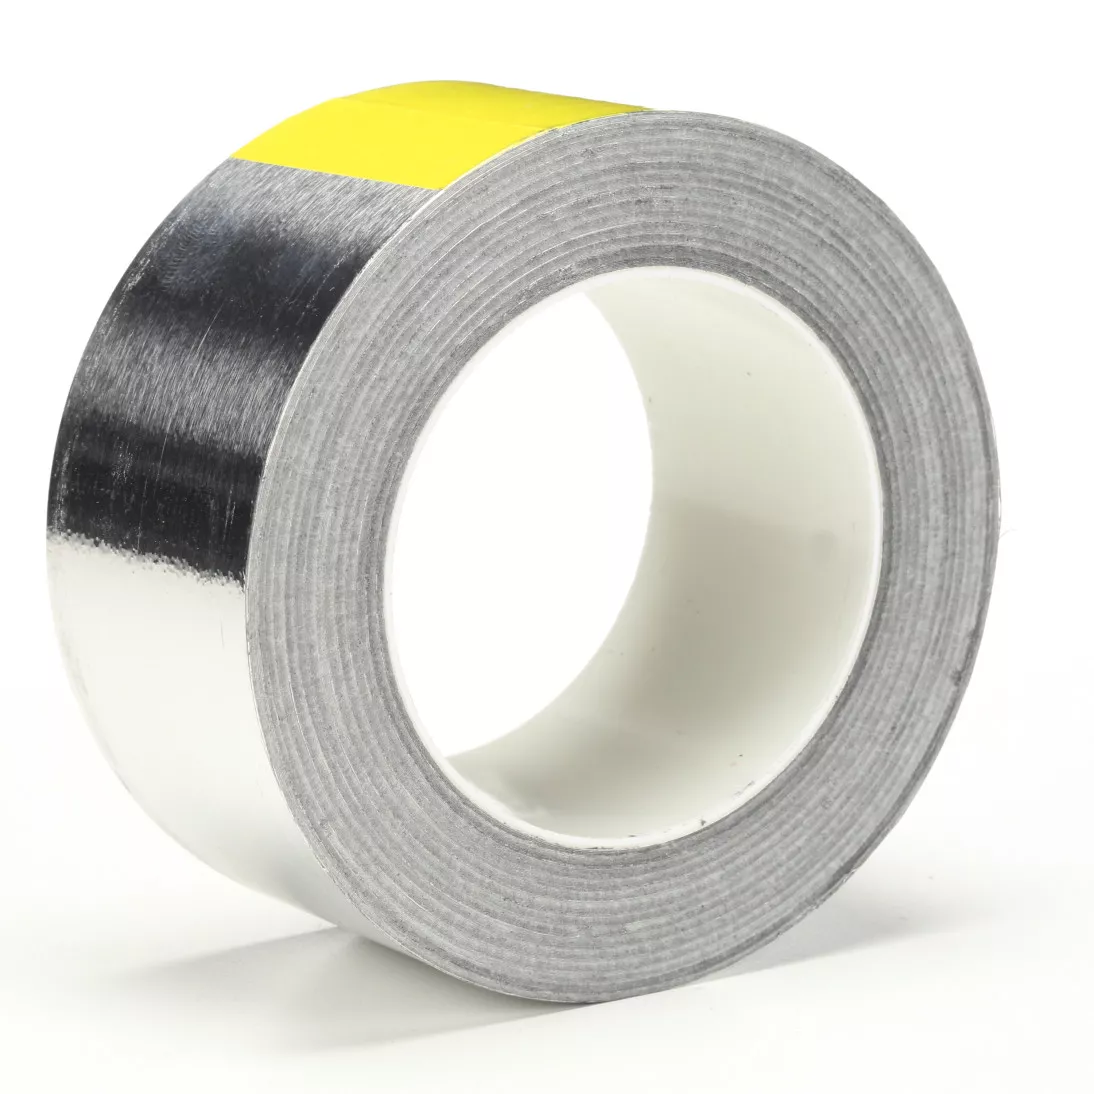 3M™ Conductive Aluminum Foil Tape 3302, Silver, 2 in x 36 yd, 3.5 mil,
24 rolls per case